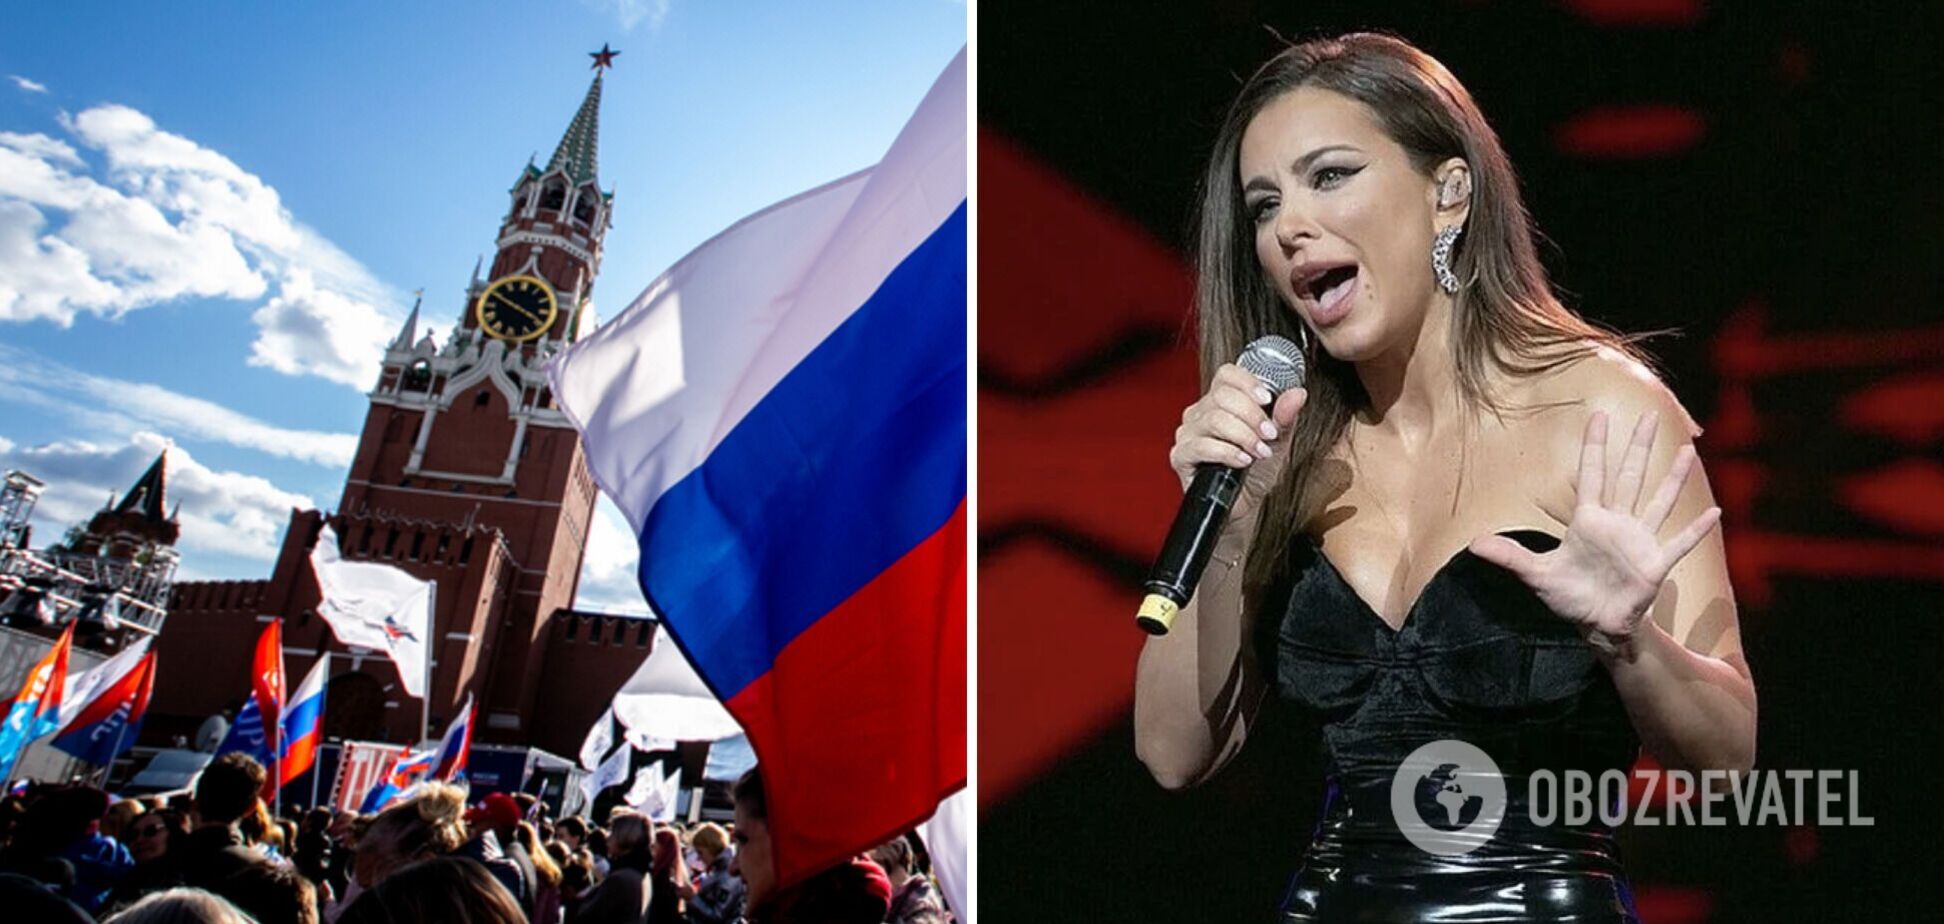 Ани Лорак отметилась циничным жестом в Москве: развлекала россиян украинскими песнями